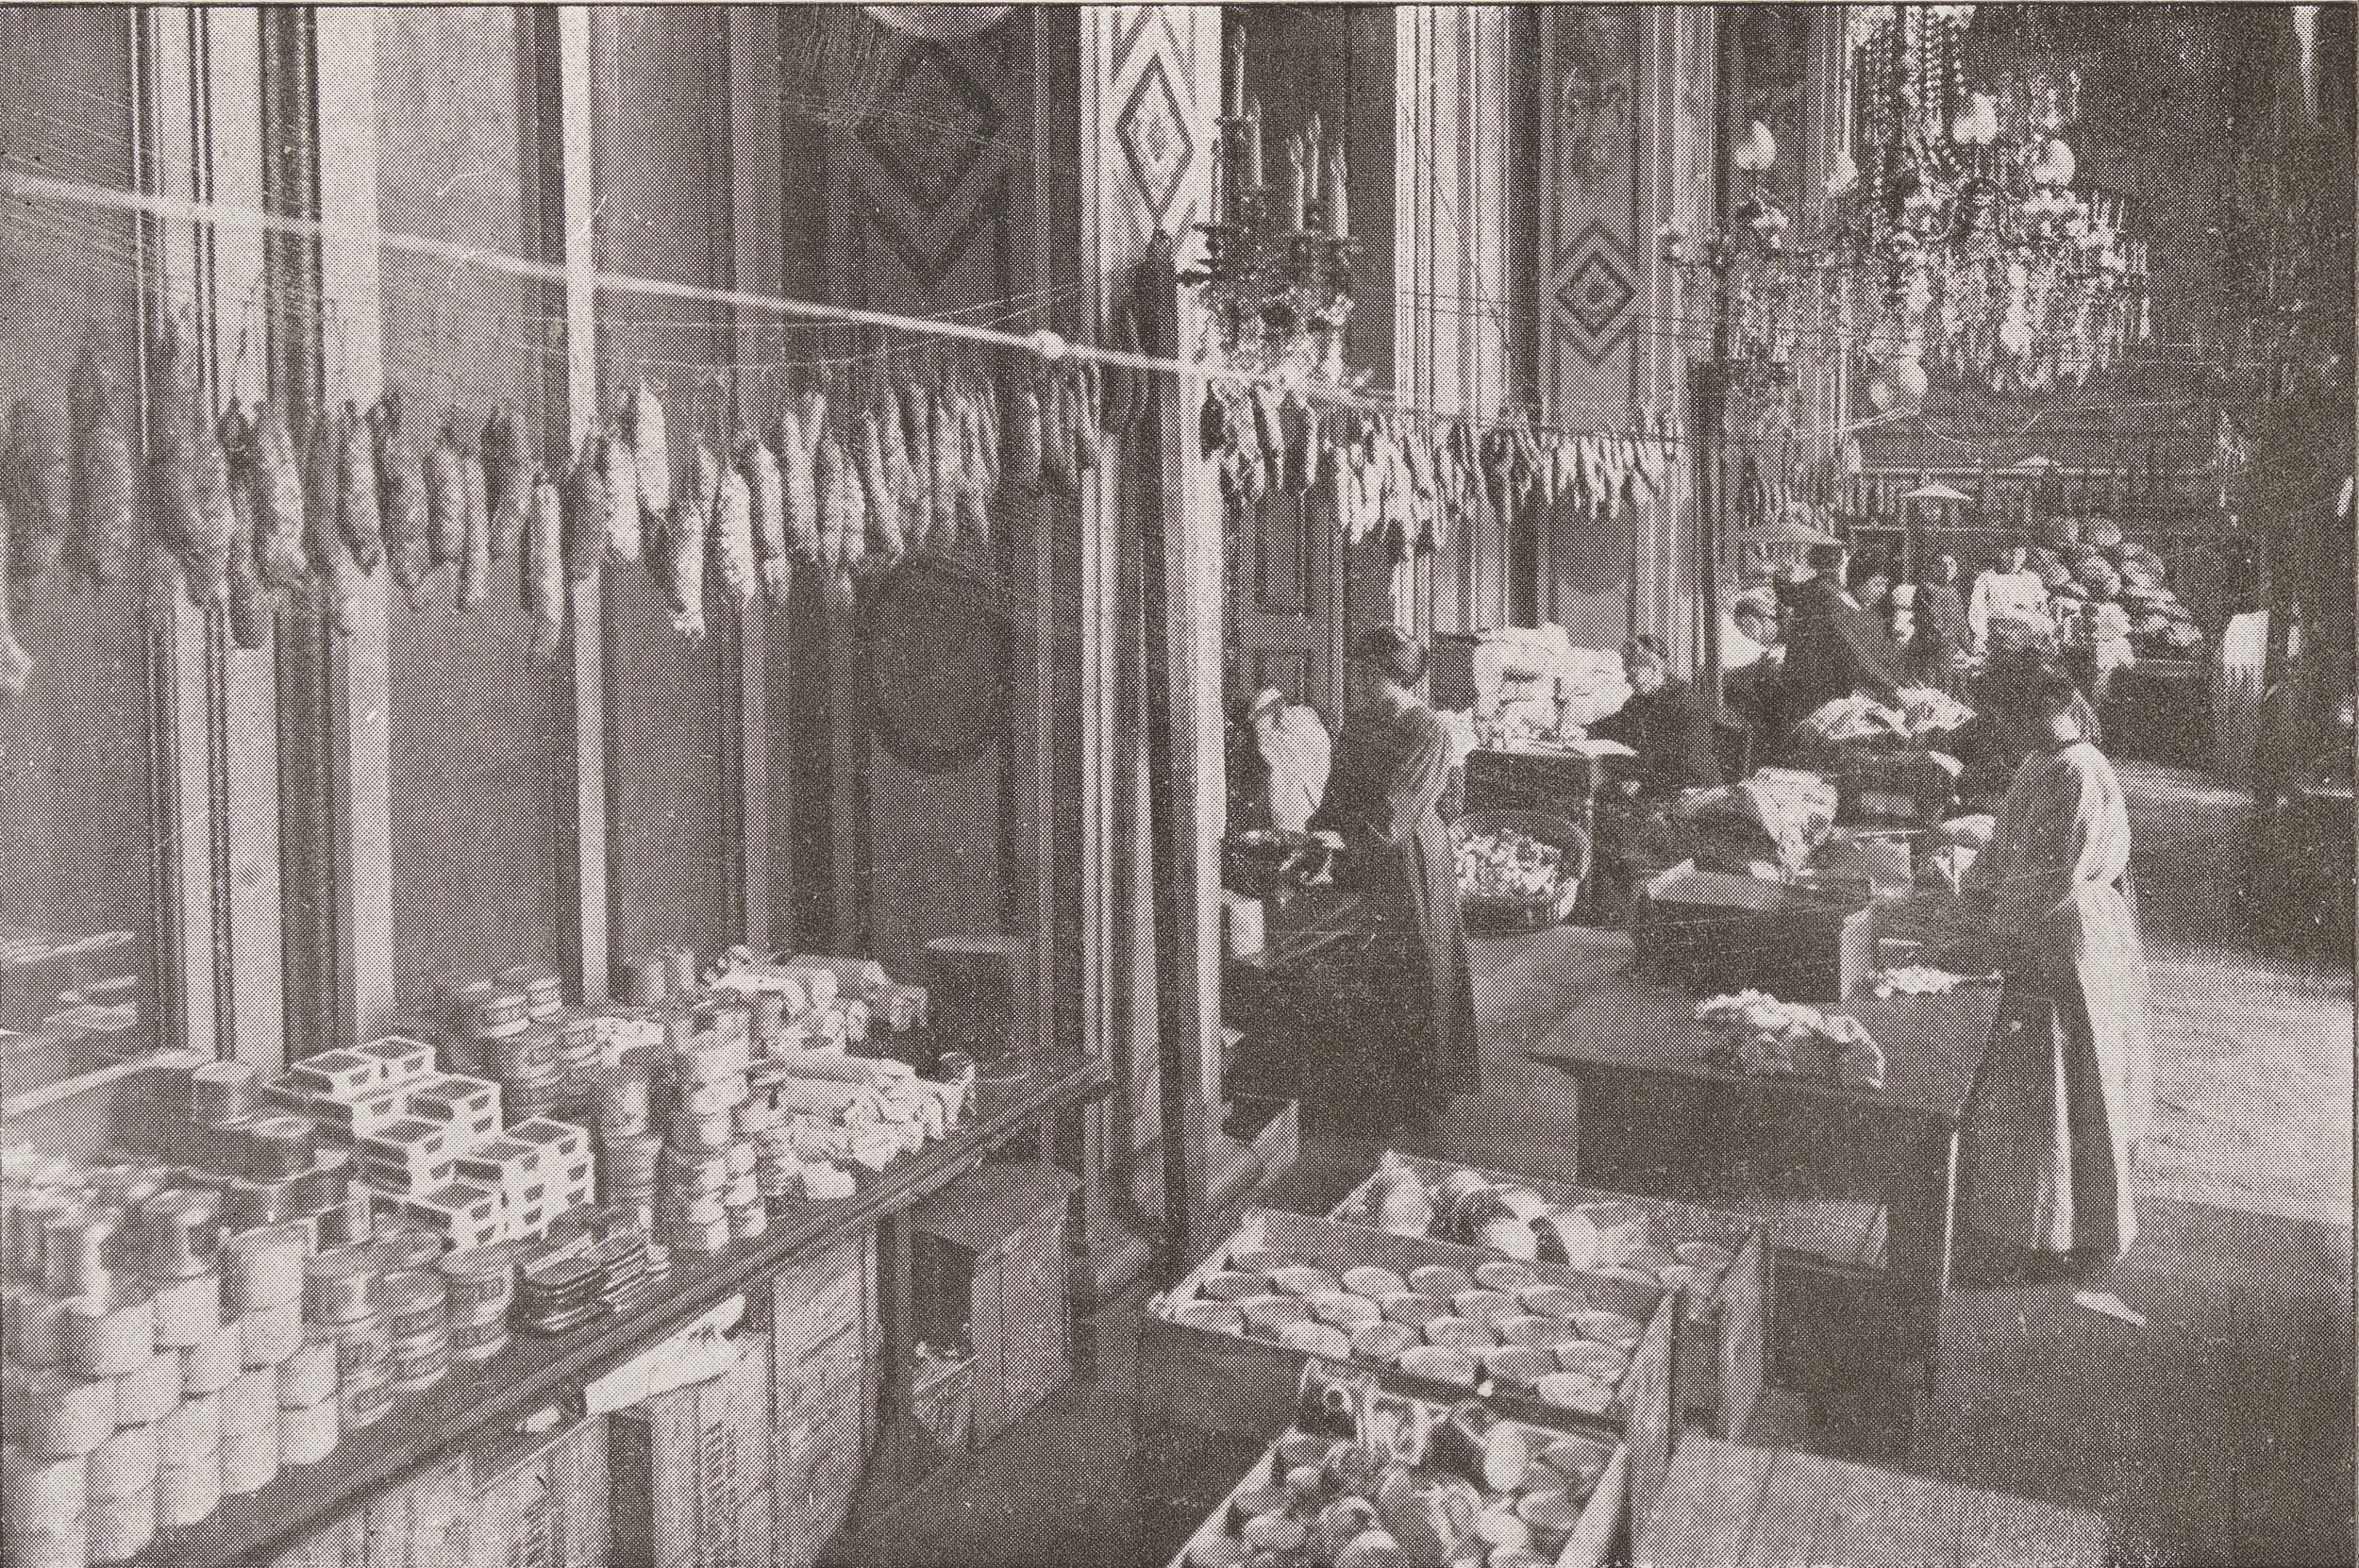 Salon de l'hôtel de ville, préparation des vivres pour les prisonniers de guerre : photo. NB impression mécanique (1914-1918, cote : 1C/7233 p. 224, détail)